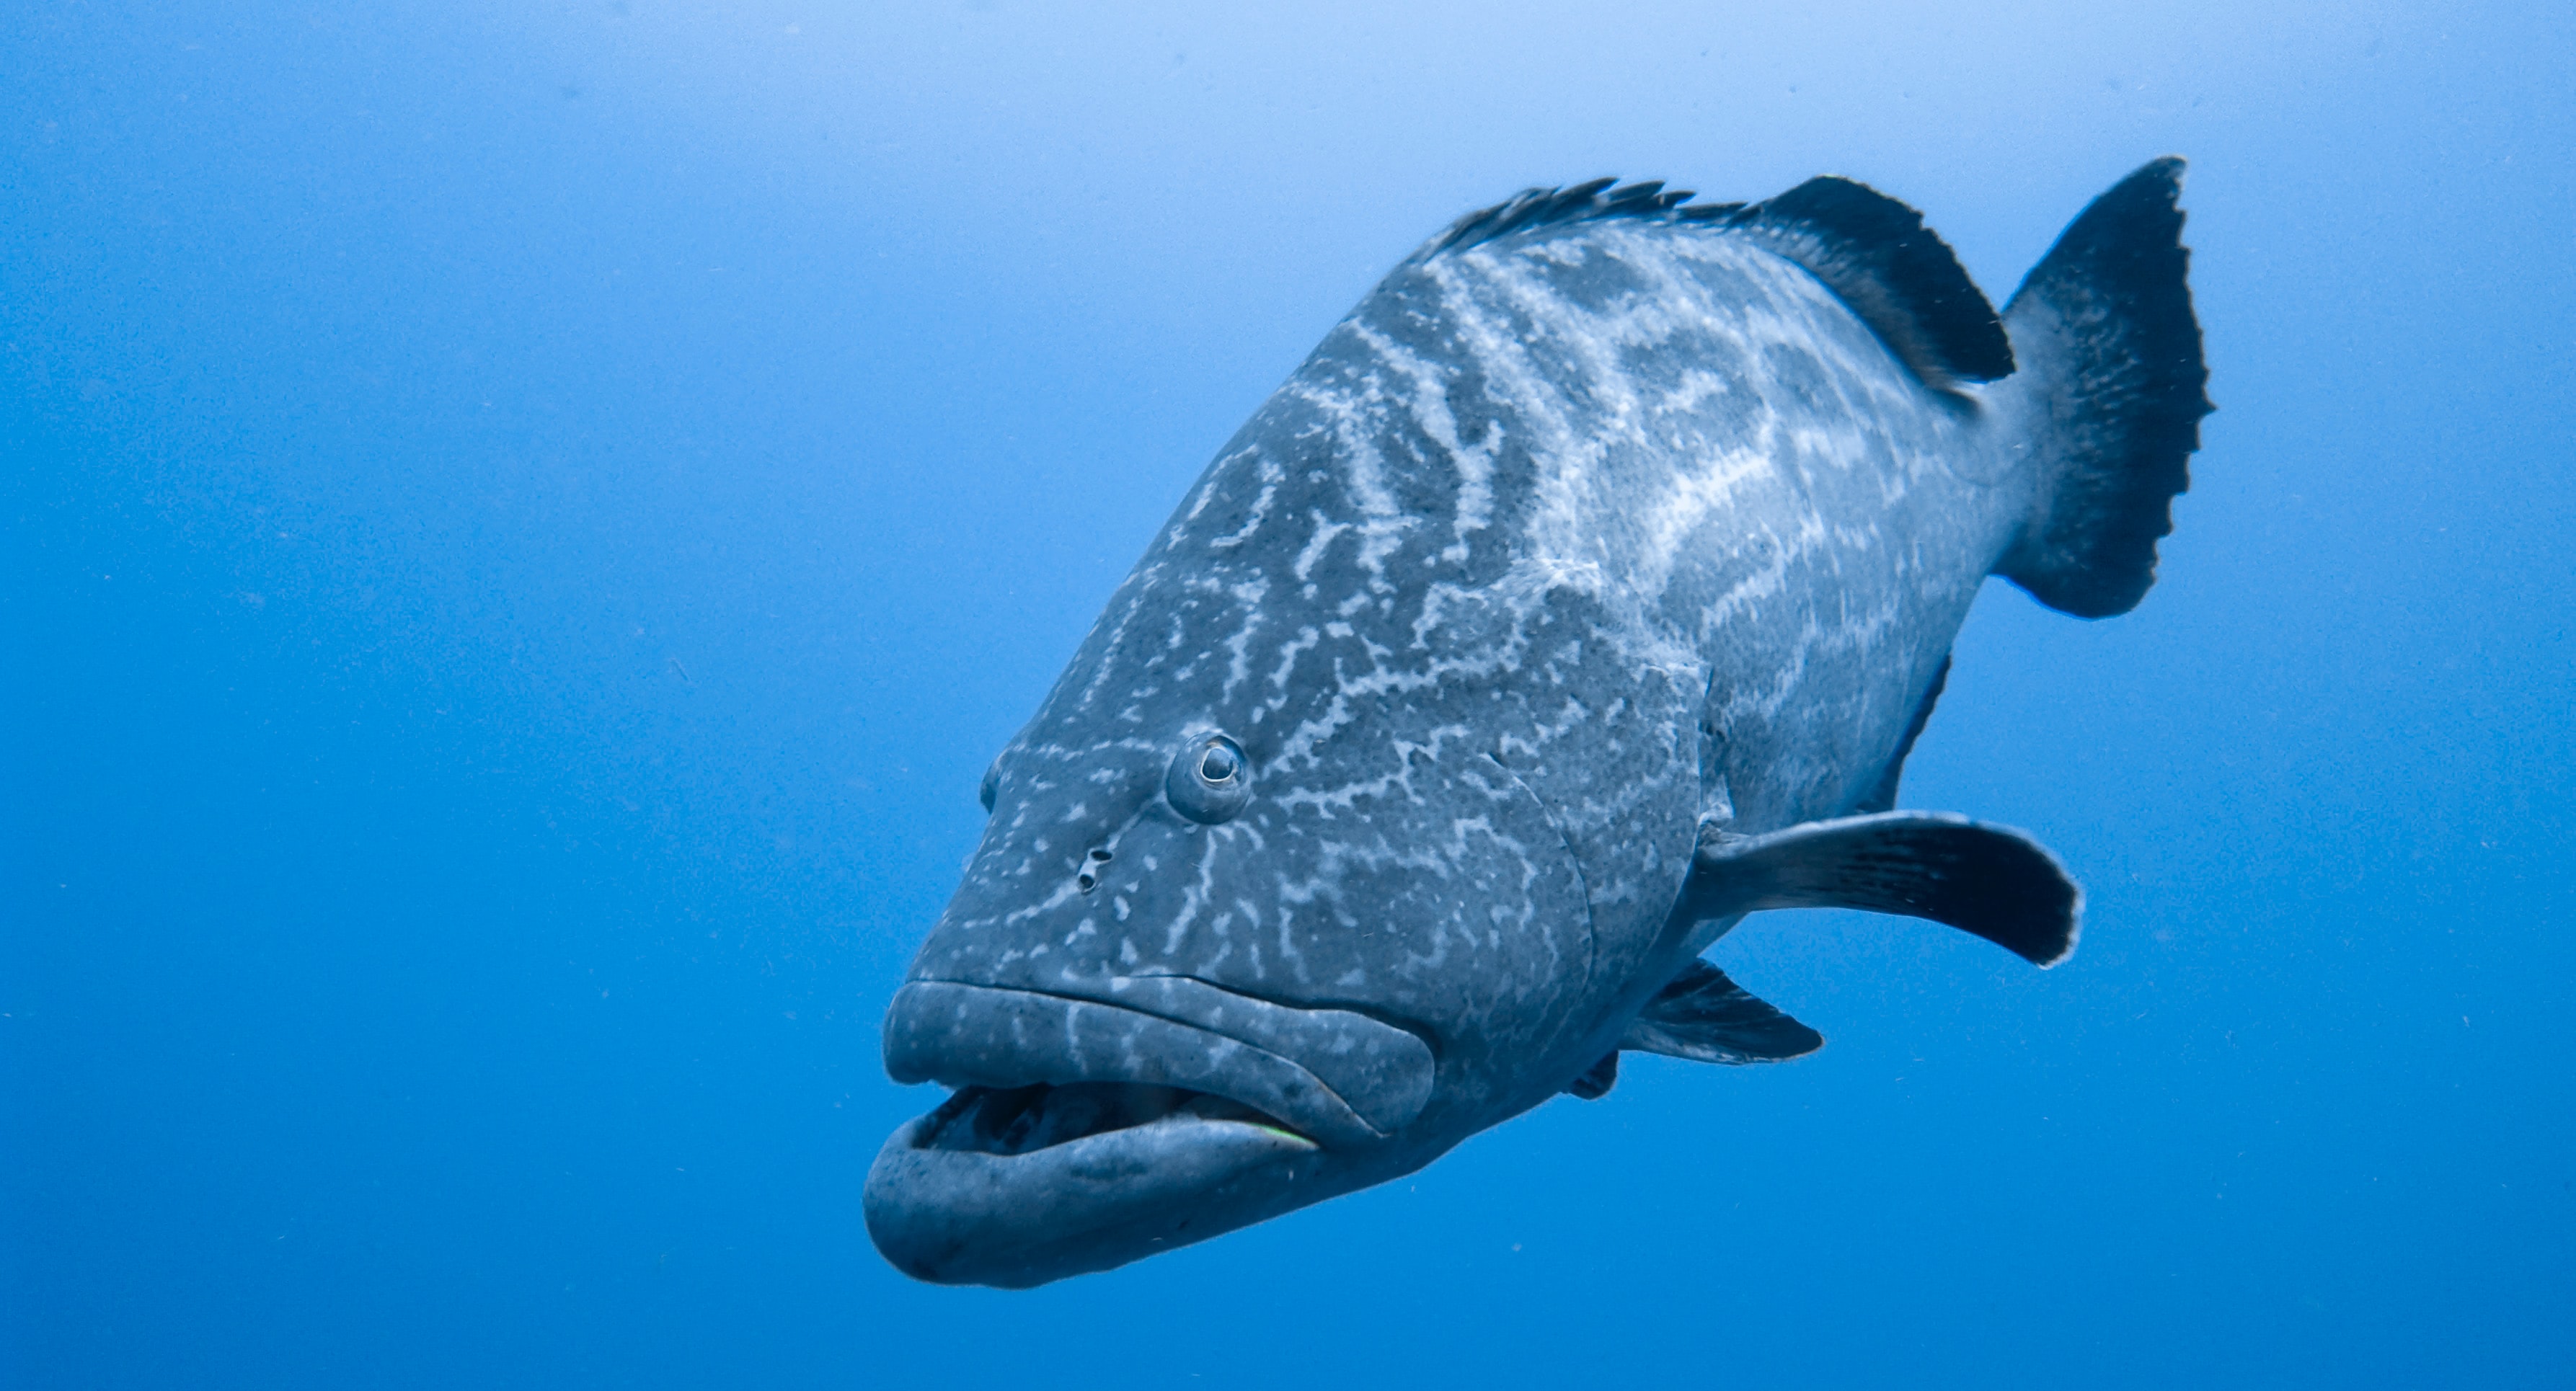 Grouper fish swimming in the Caribbean Sea near Mexico